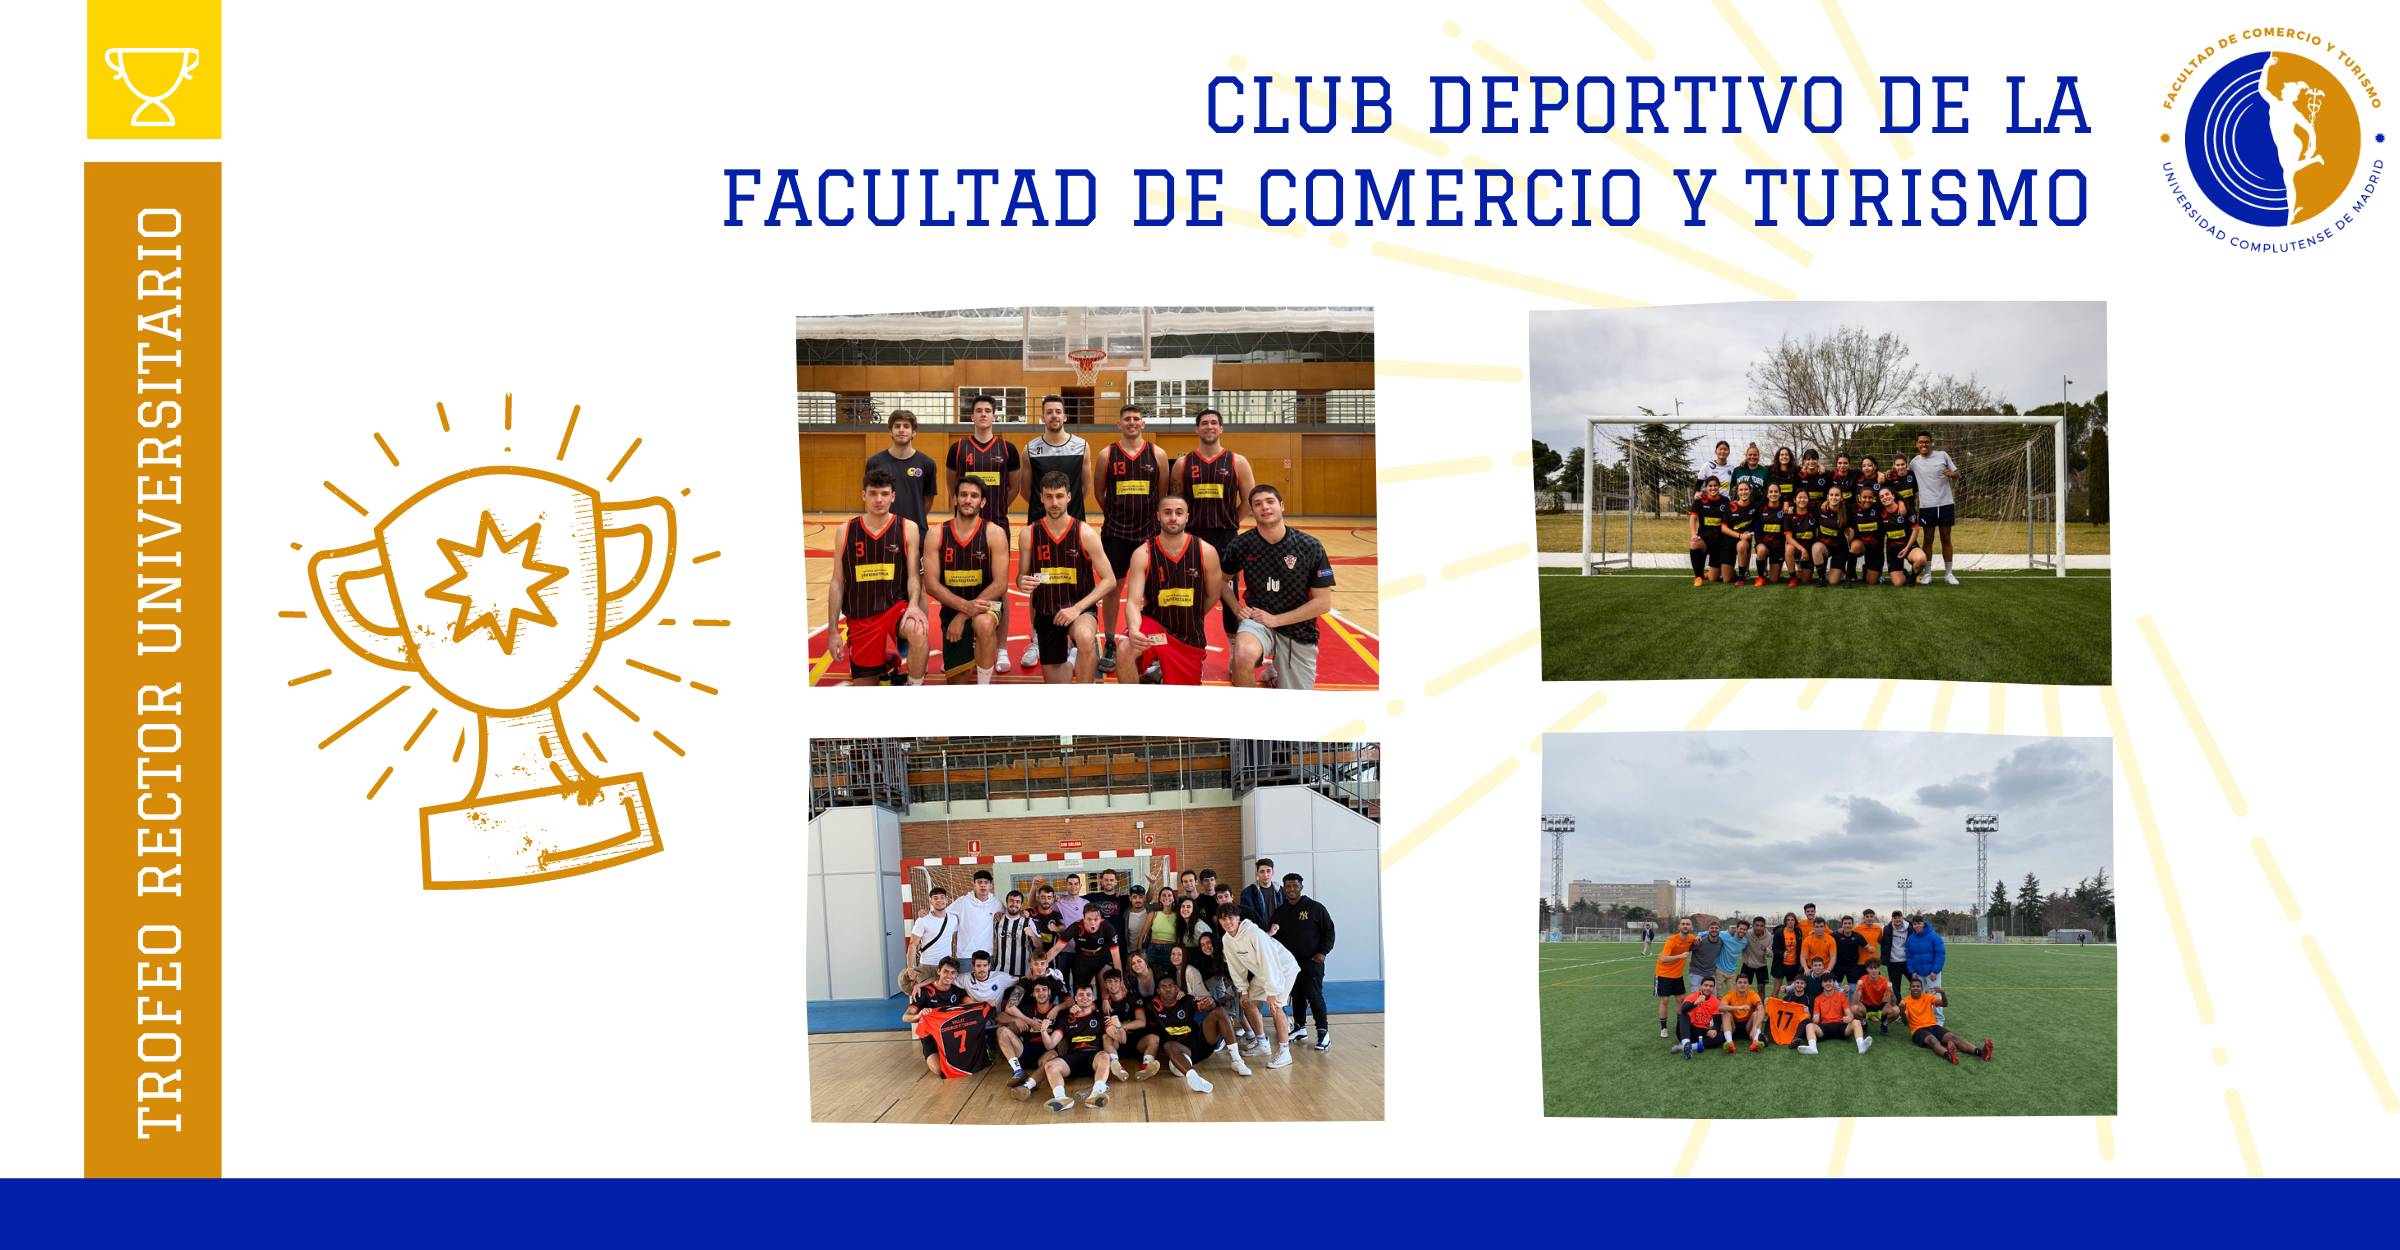 Triunfos del Club Deportivo de la Facultad de Comercio y Turismo